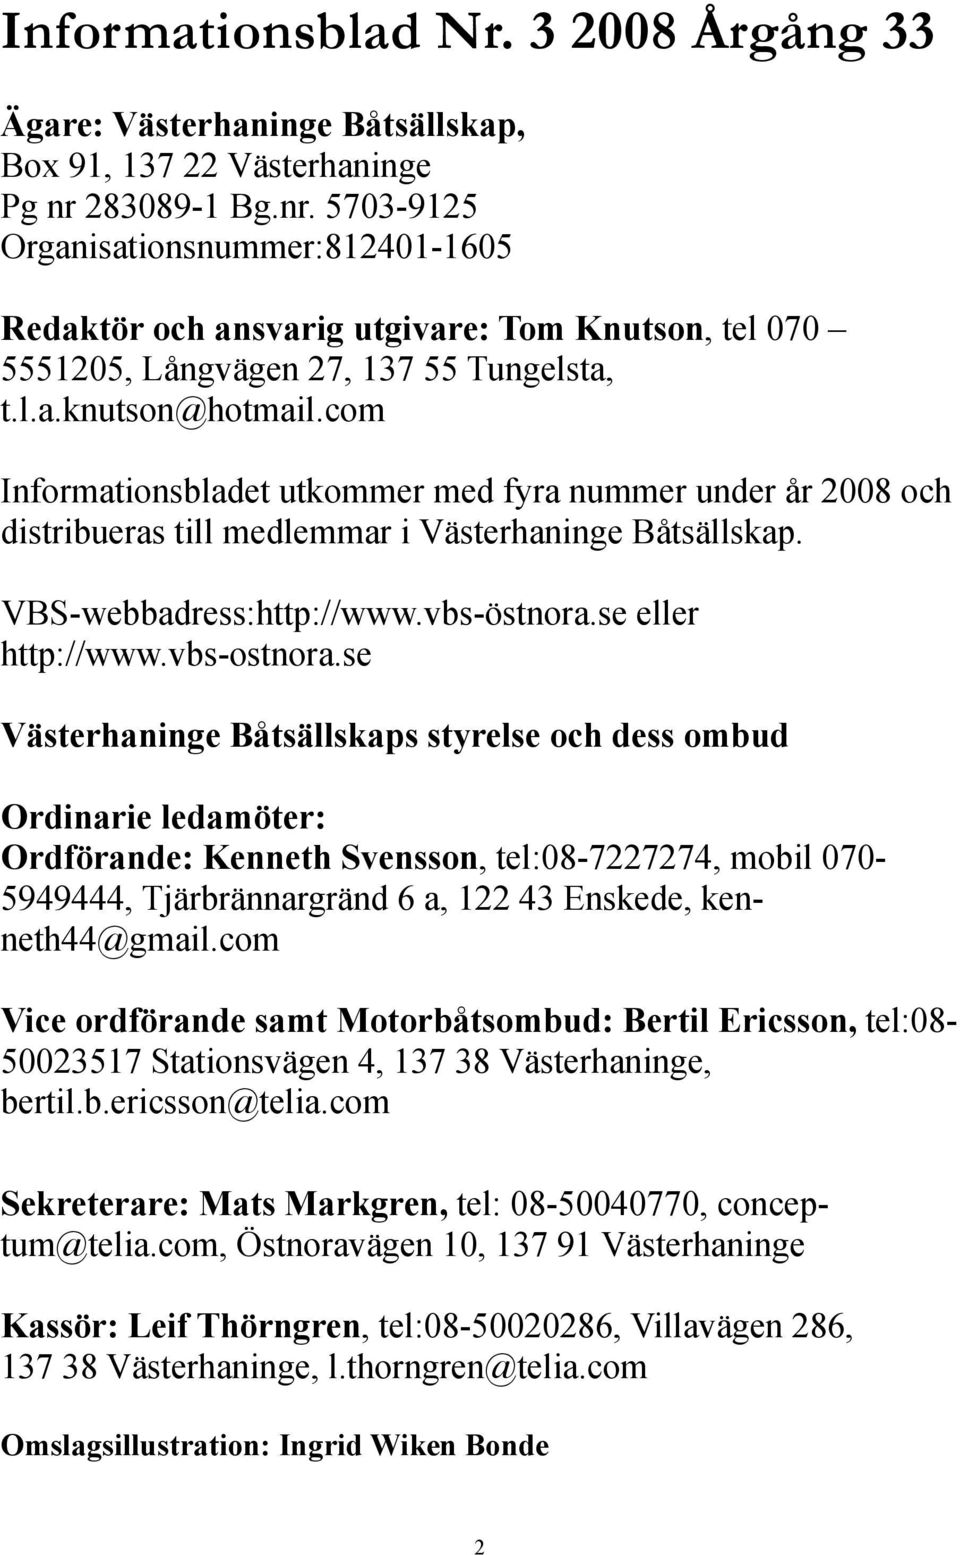 com Informationsbladet utkommer med fyra nummer under år 2008 och distribueras till medlemmar i Västerhaninge Båtsällskap. VBS-webbadress:http://www.vbs-östnora.se eller http://www.vbs-ostnora.